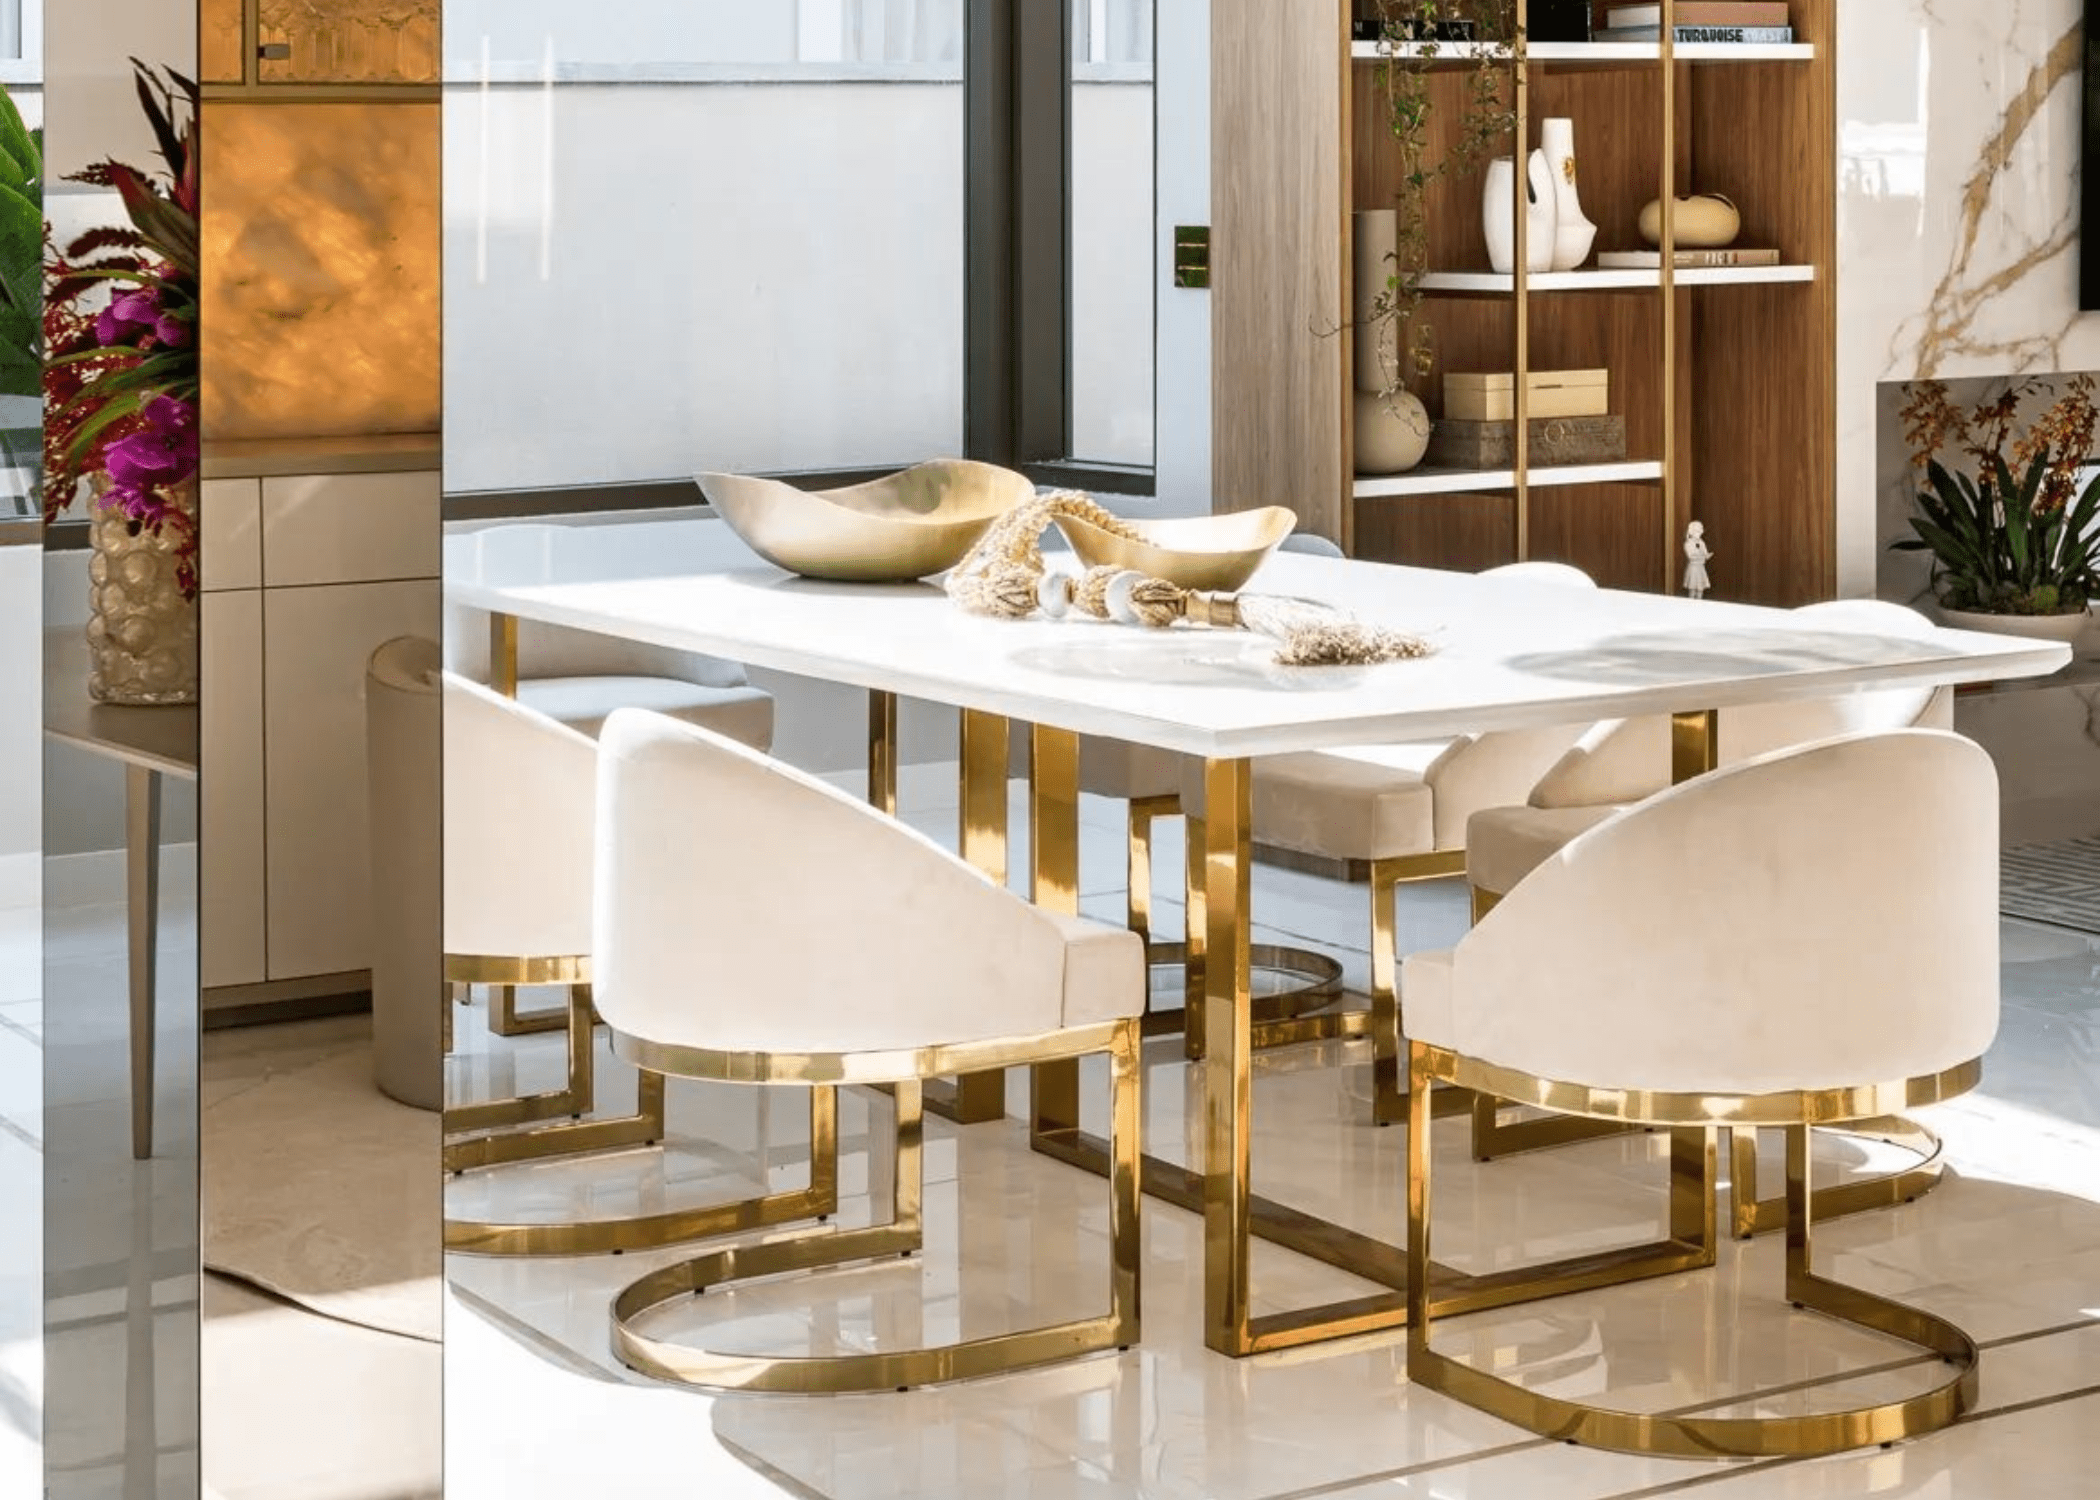 A Mesa de Jantar Eldorado em ambiente sofisticado, demonstrando como o dourado e o acabamento impecável realçam a decoração e criam uma atmosfera luxuosa.